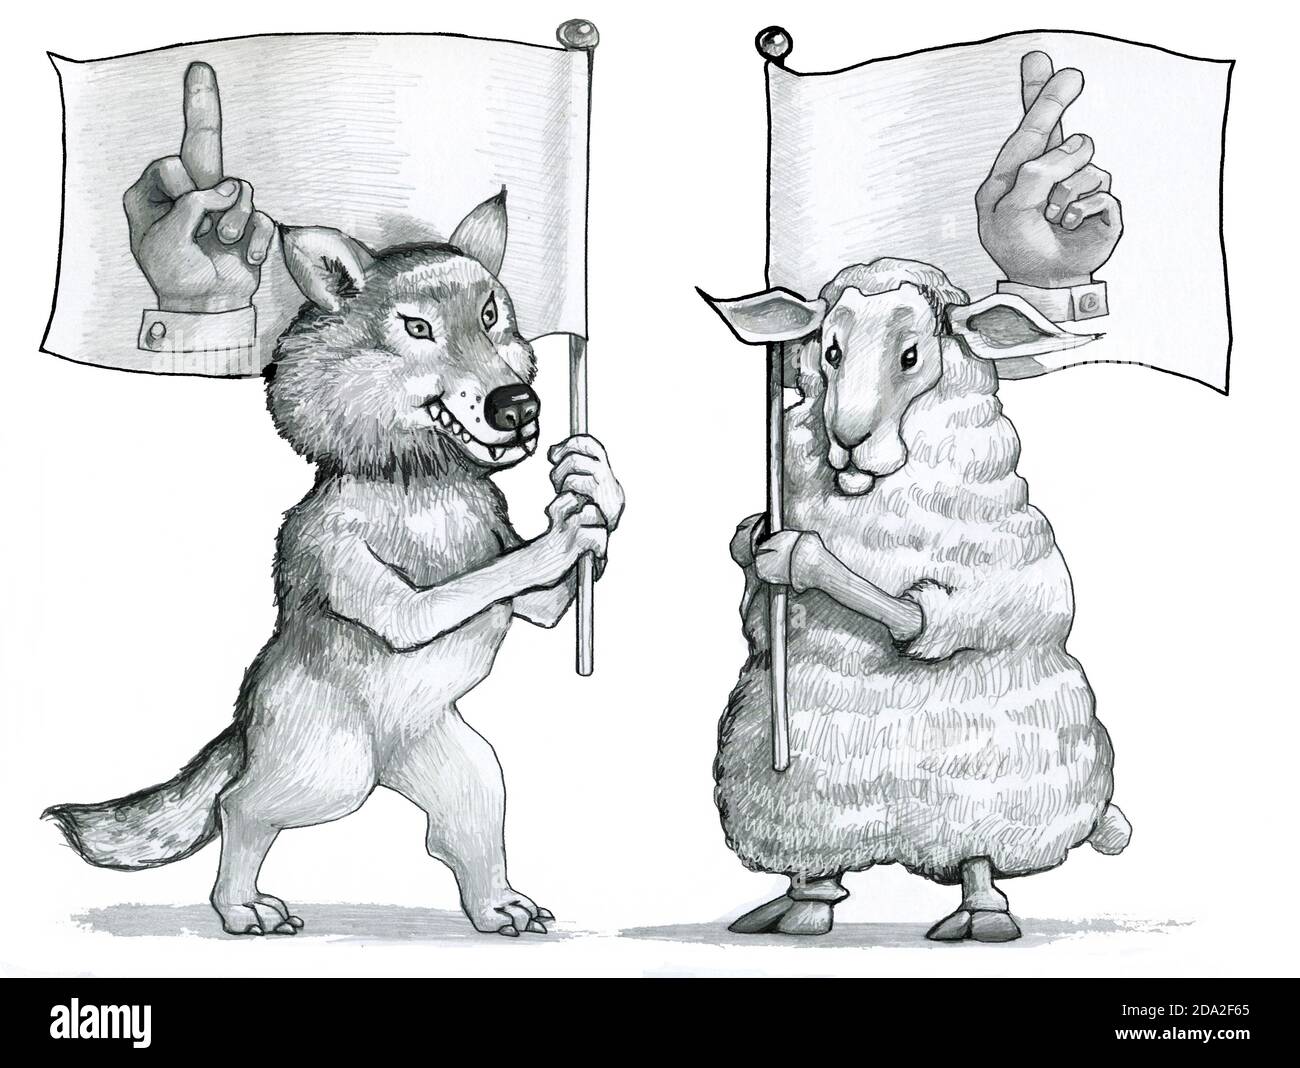 wolf a un drapeau avec une main dessinée avec le milieu symbole élevé d'arrogance le navire a un drapeau avec les doigts croisés sont superstitititieux et symbolent la douceur Banque D'Images